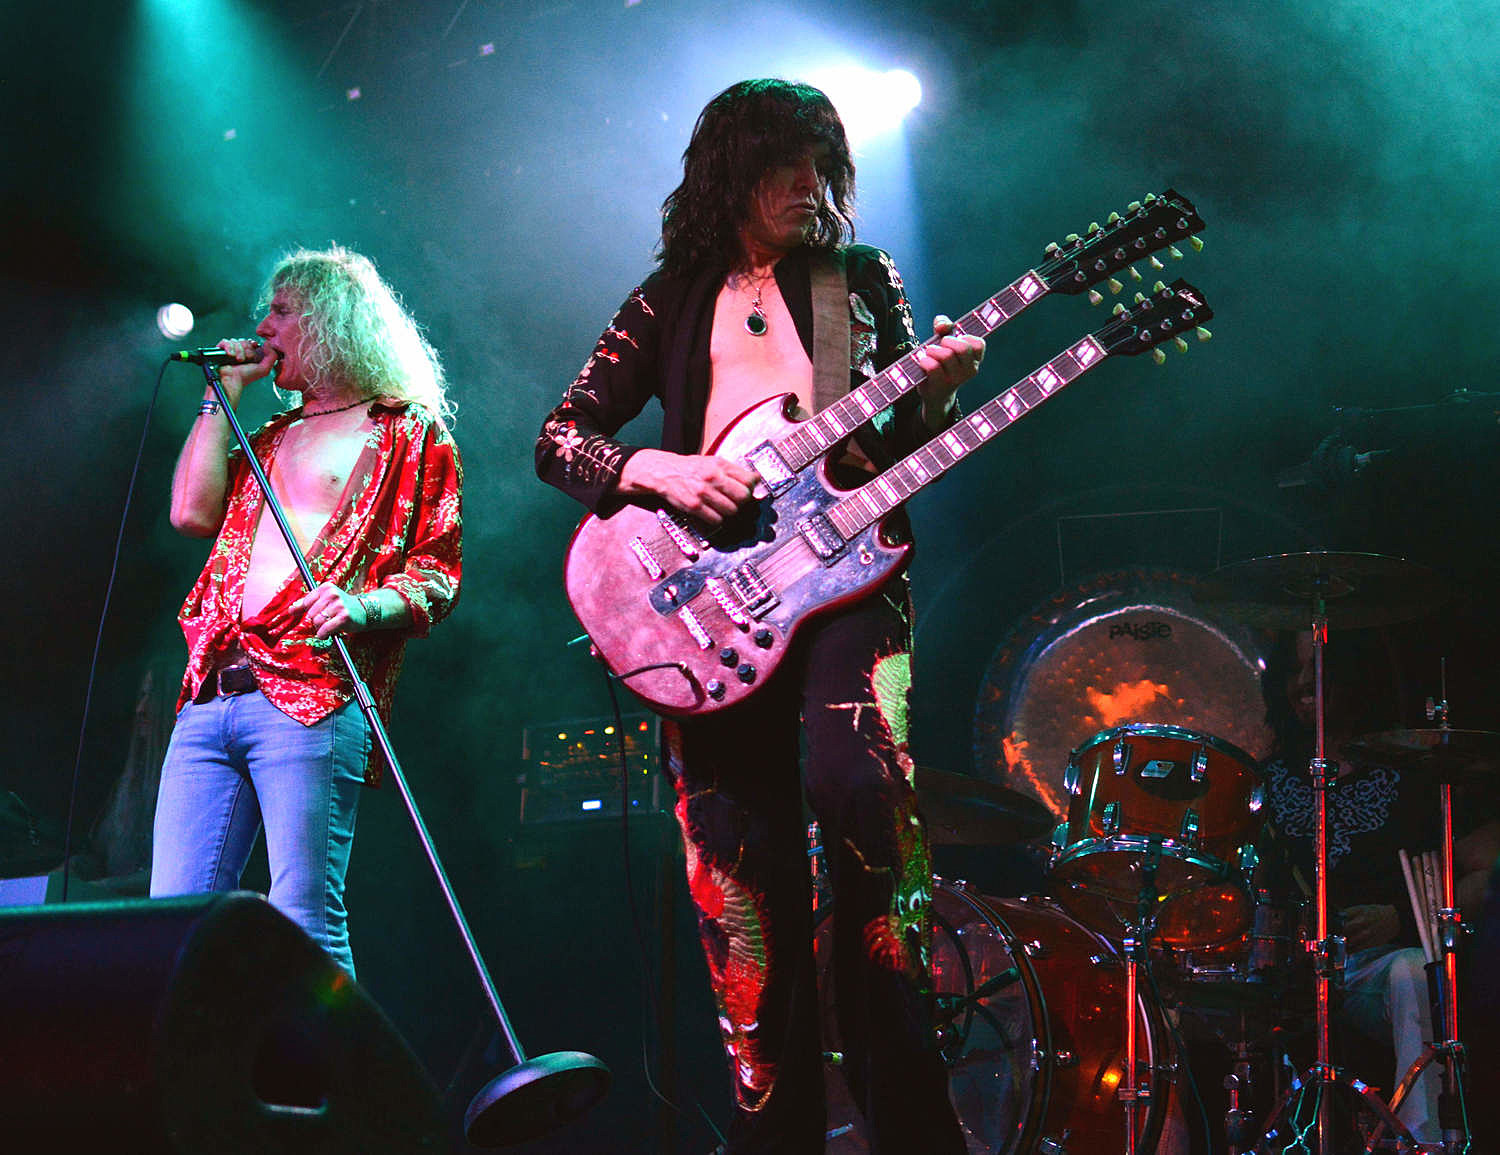 Killer Led Zeppelin Tribute This Week